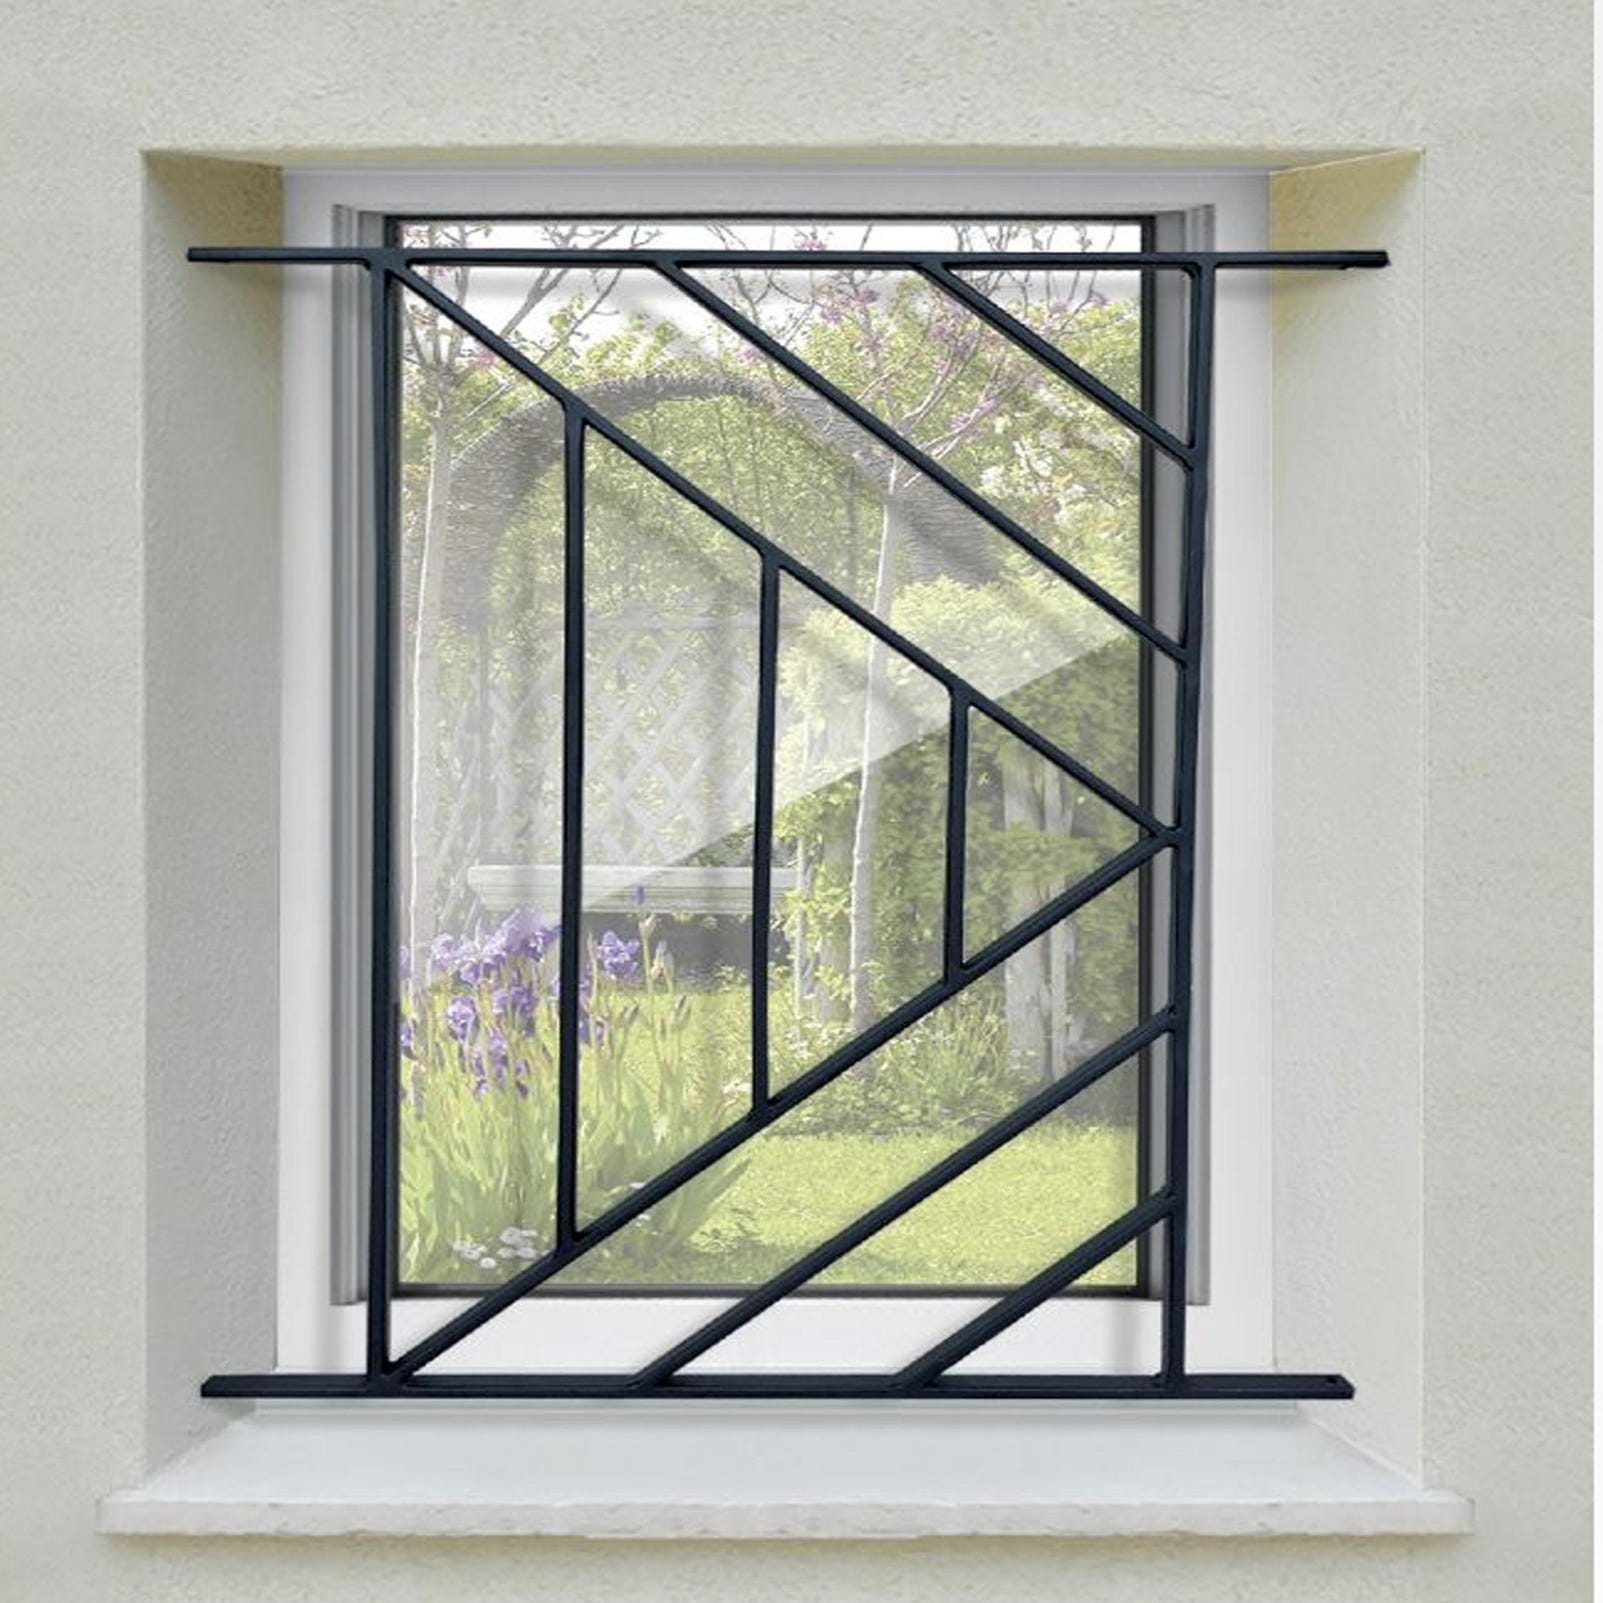 Grata di sicurezza Isoangle per finestra H = 75 cm x L = 60 cm